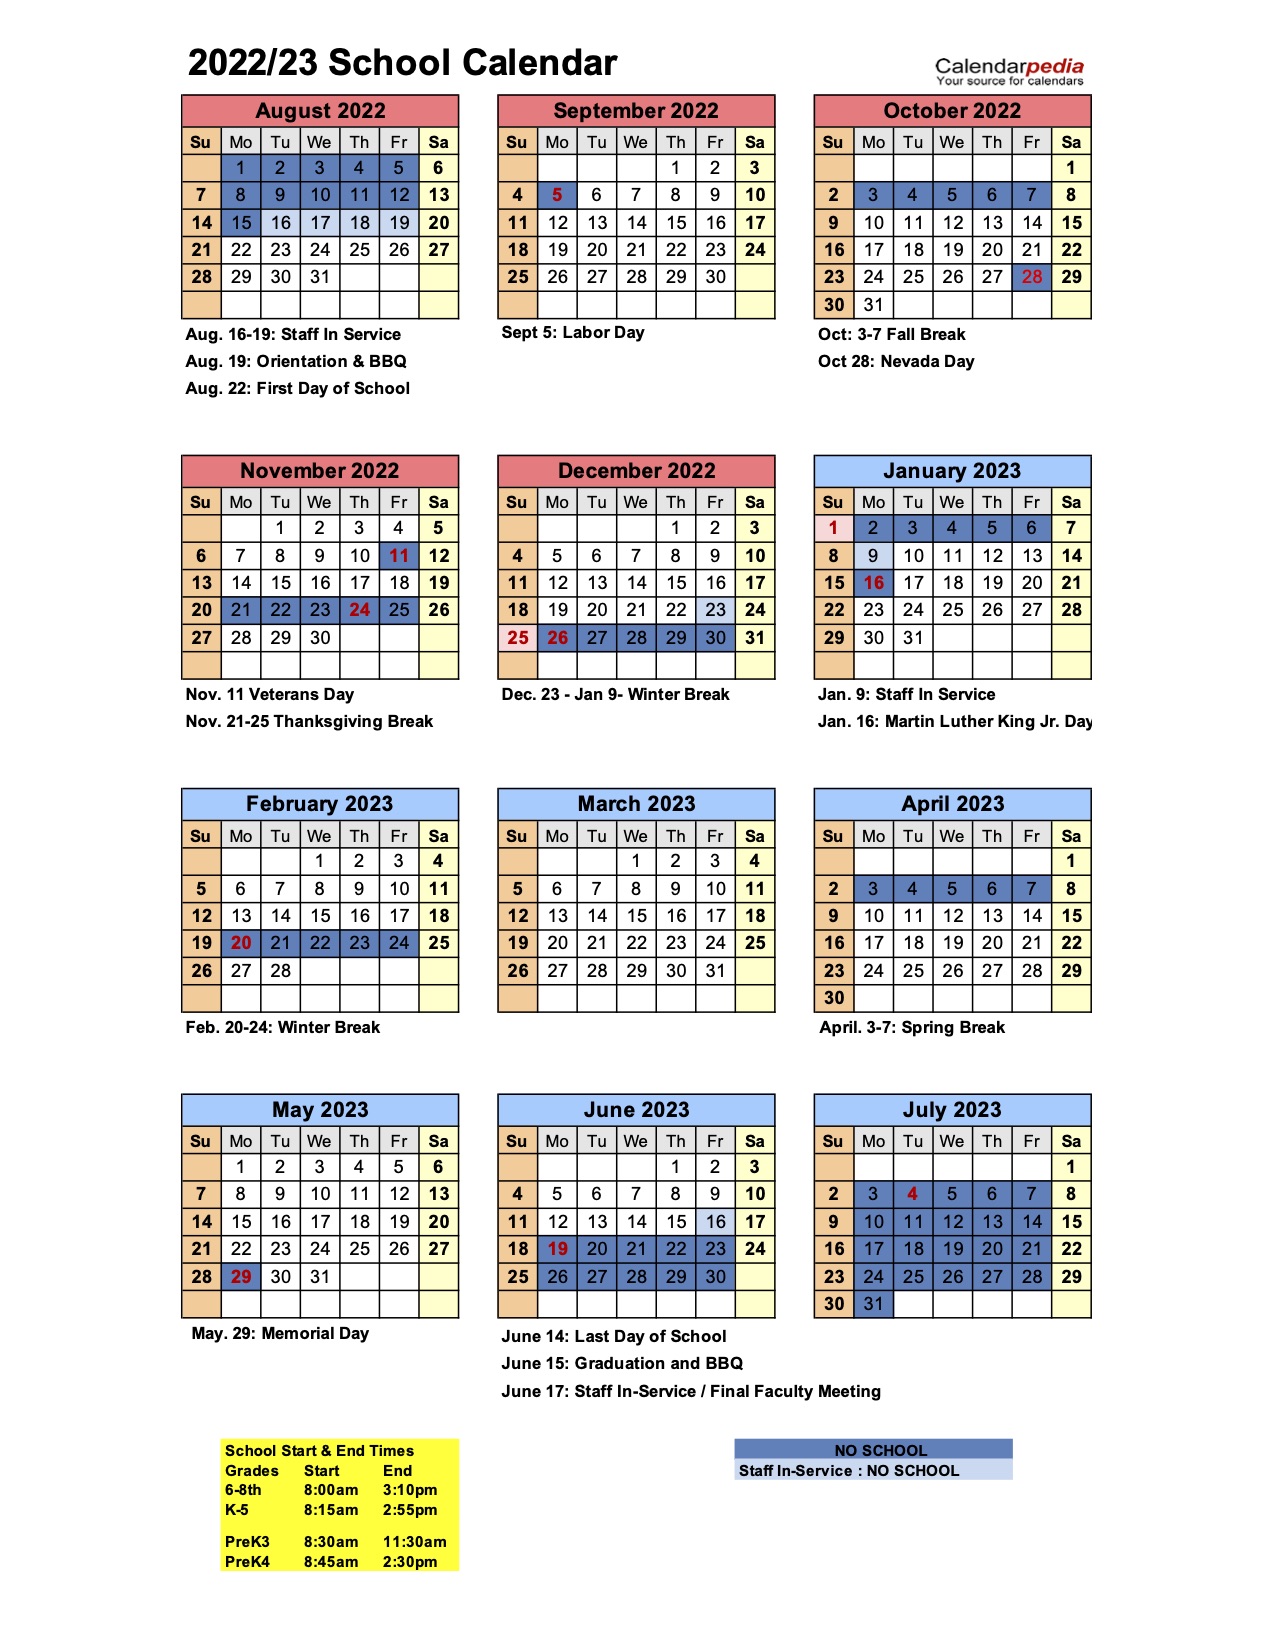 2022-23 LTS Calendar